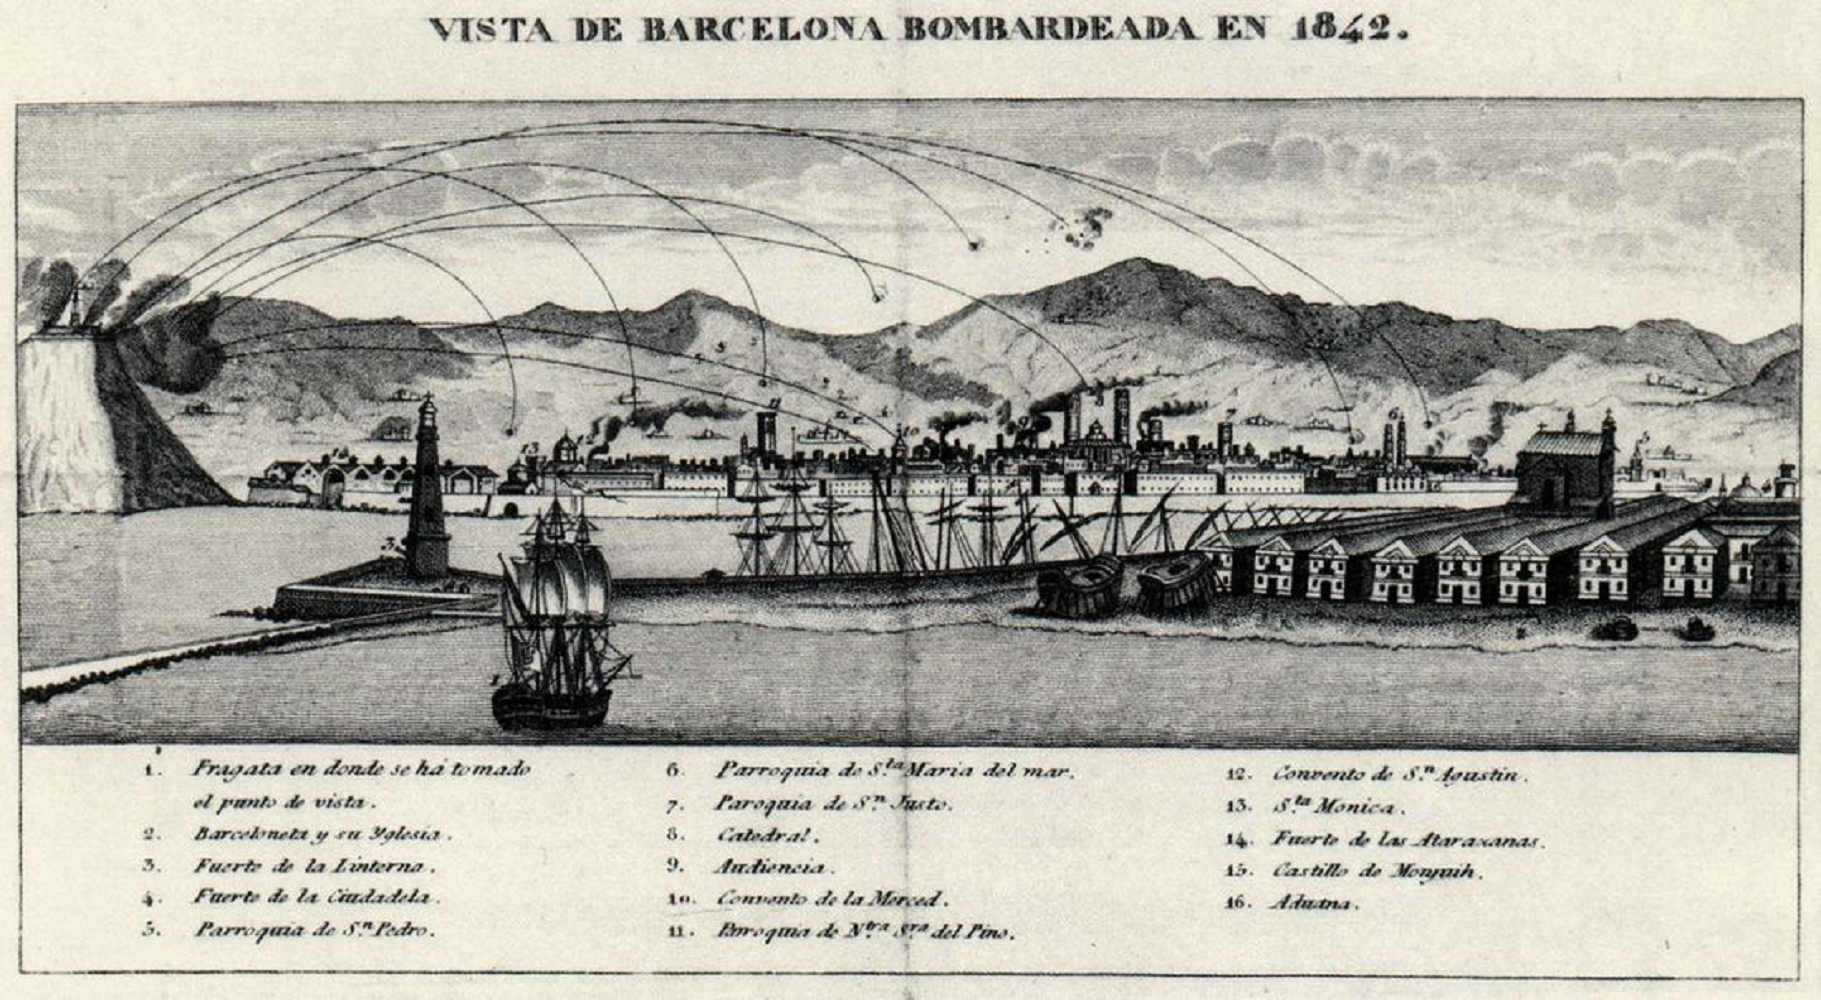 El regent d'Espanya ordena el bombardeig de Barcelona